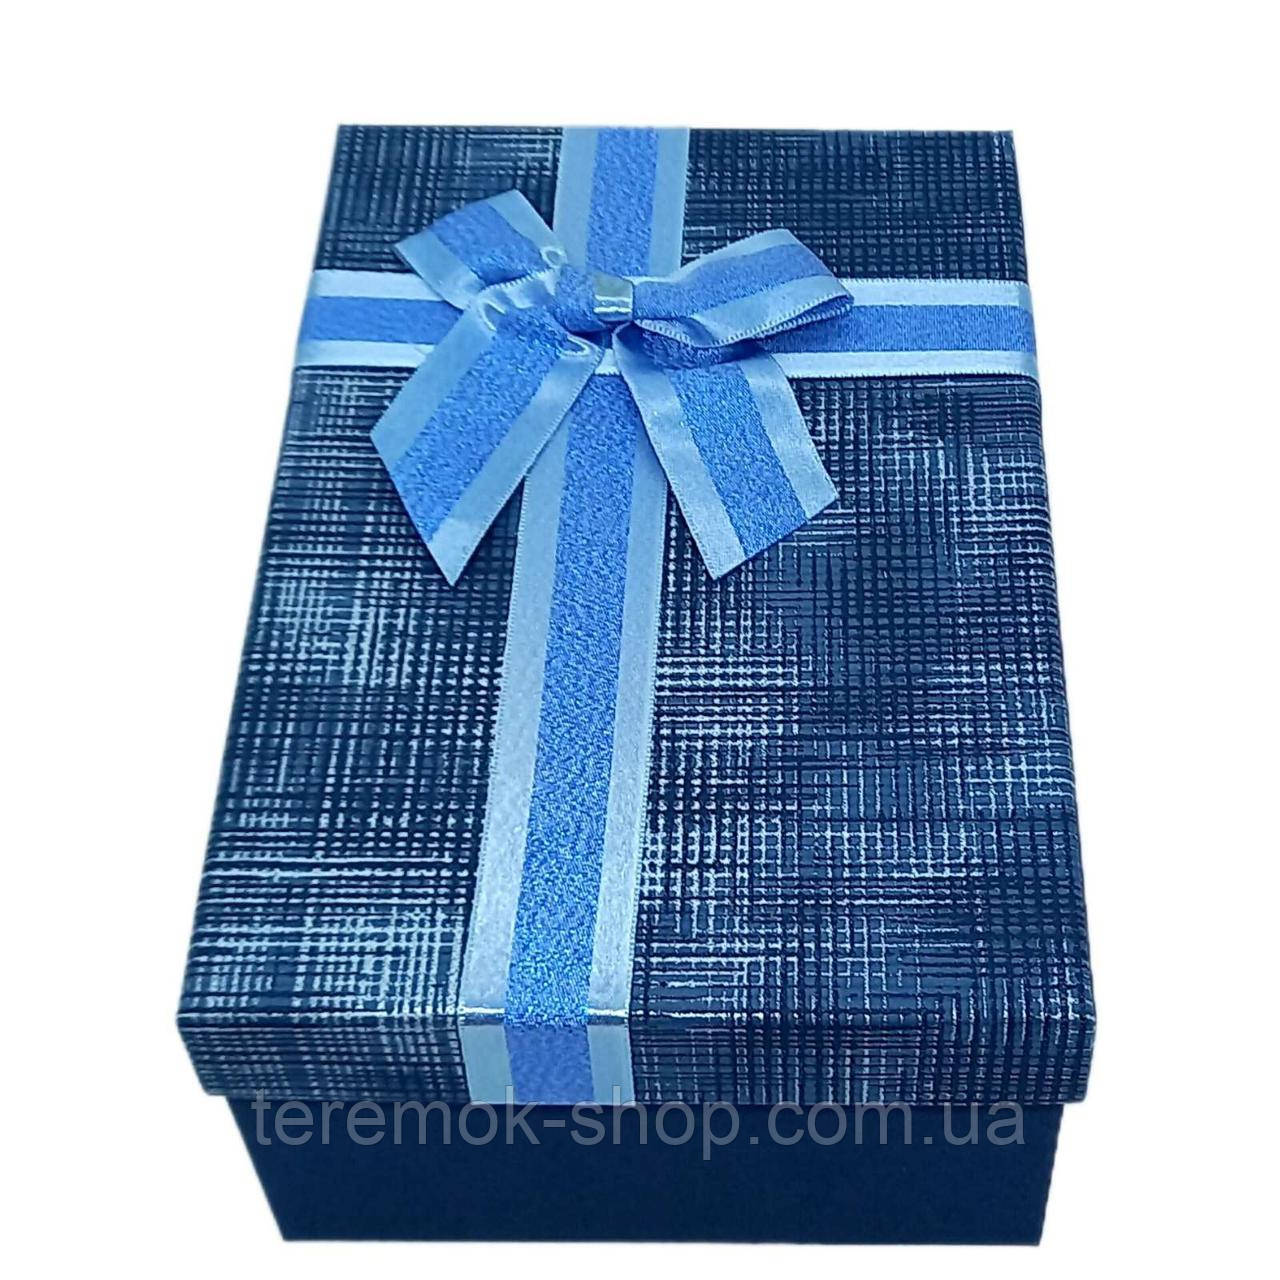 Синя коробка подарункова прямокутна прямокутна щільна з кришкою 19х12х6 см, упаковка для подарунка з блакитним бантом маленька